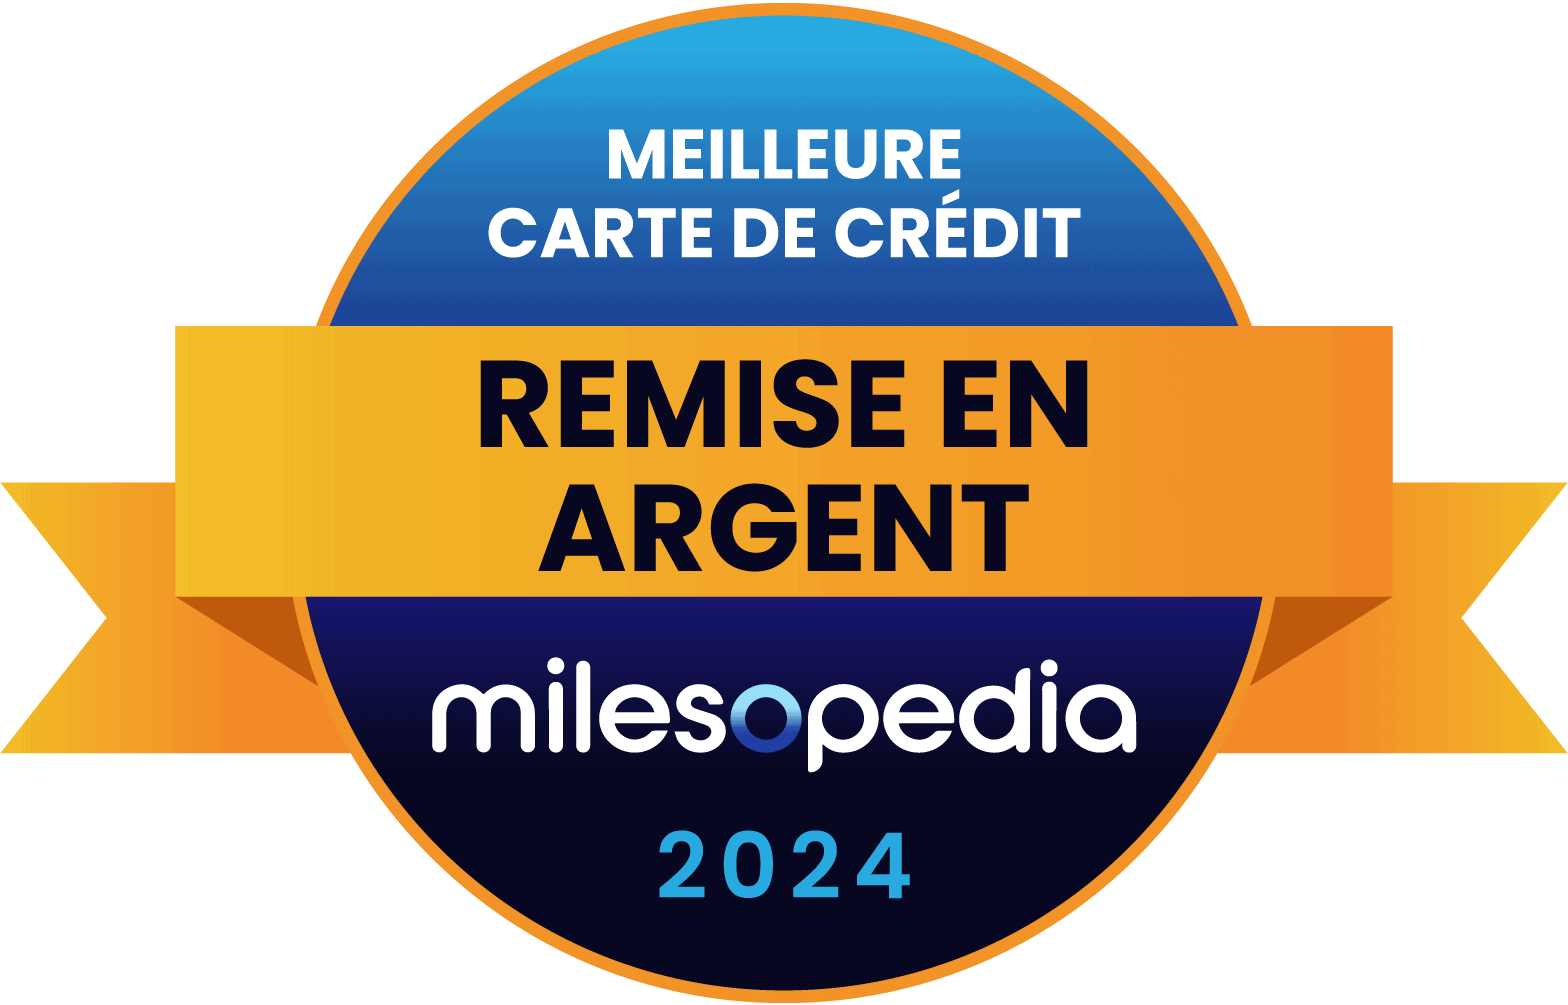 RemiseEnArgent MeilleureCarteDeCredit Milesopedia 2024